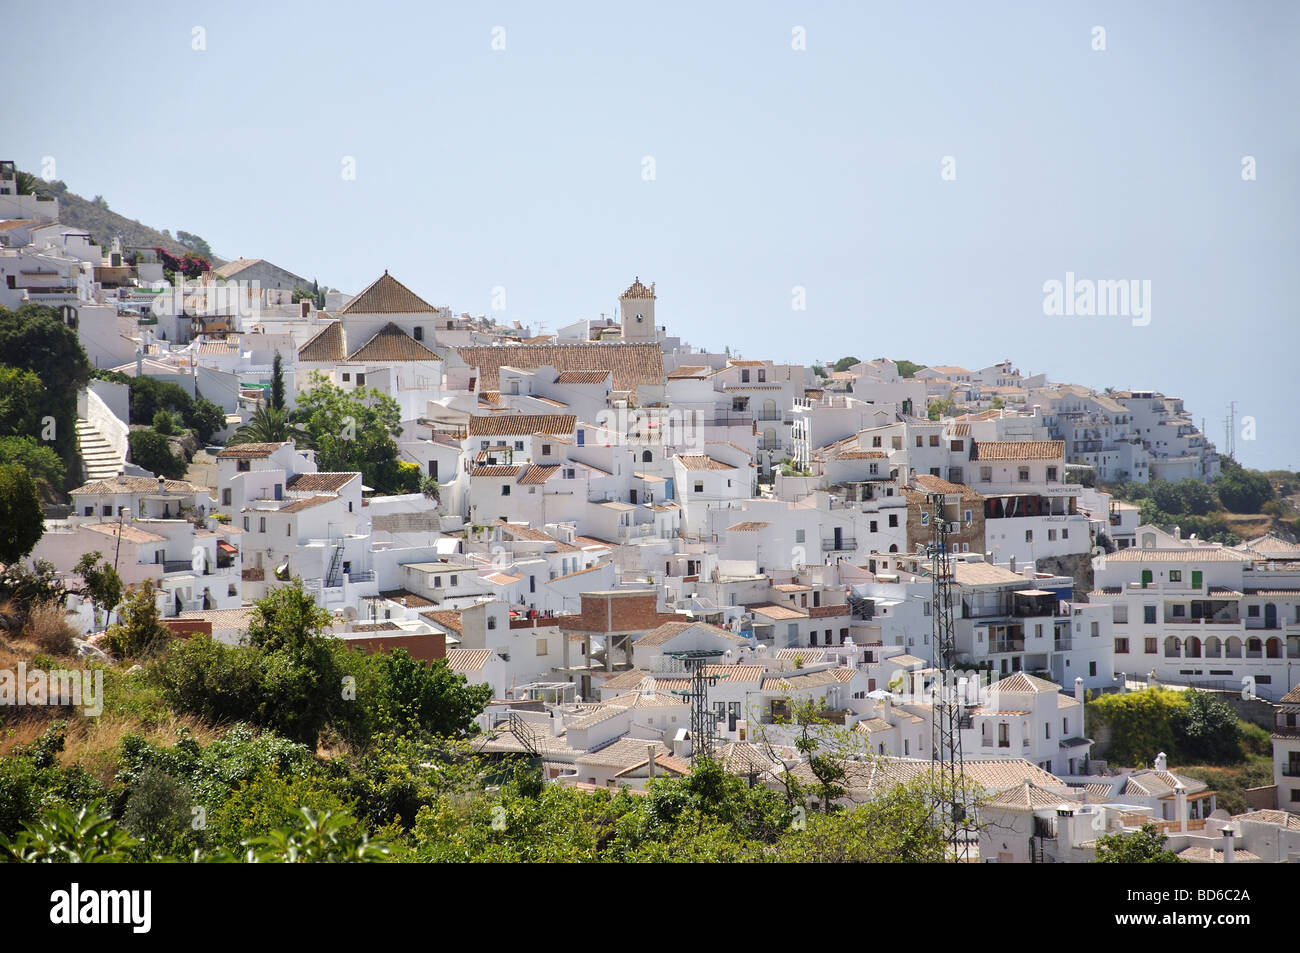 View of pretty Andalusian village of Frigiliana, Costa del Sol, Malaga Province, Andalucia, Spain Stock Photo